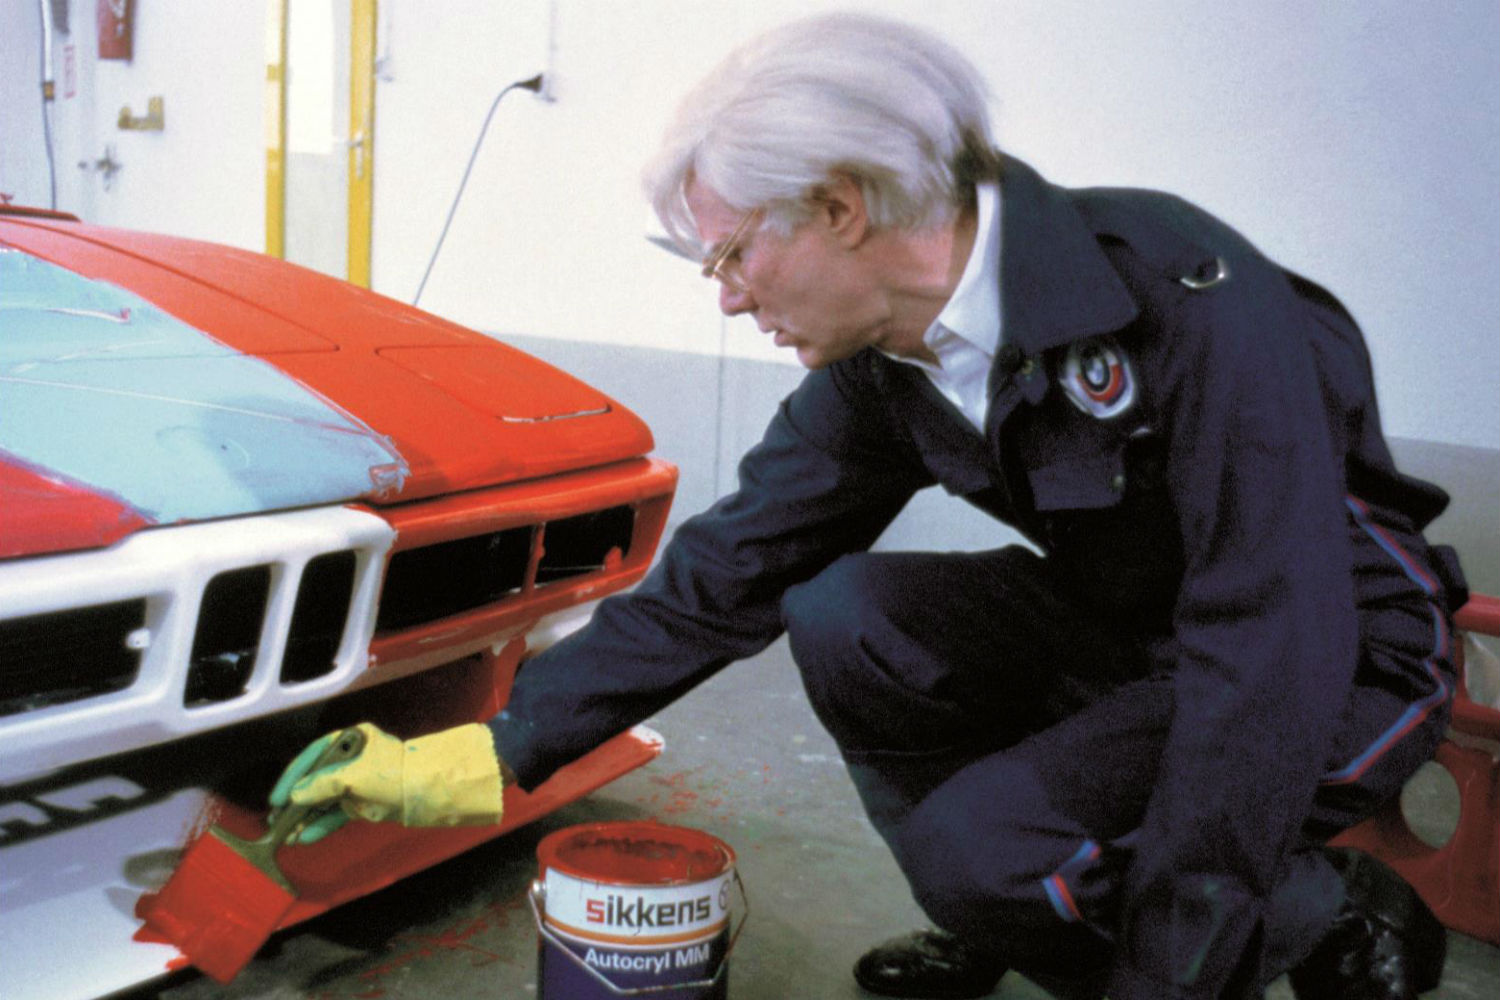 BMW M1 Procar de Andy Warhol